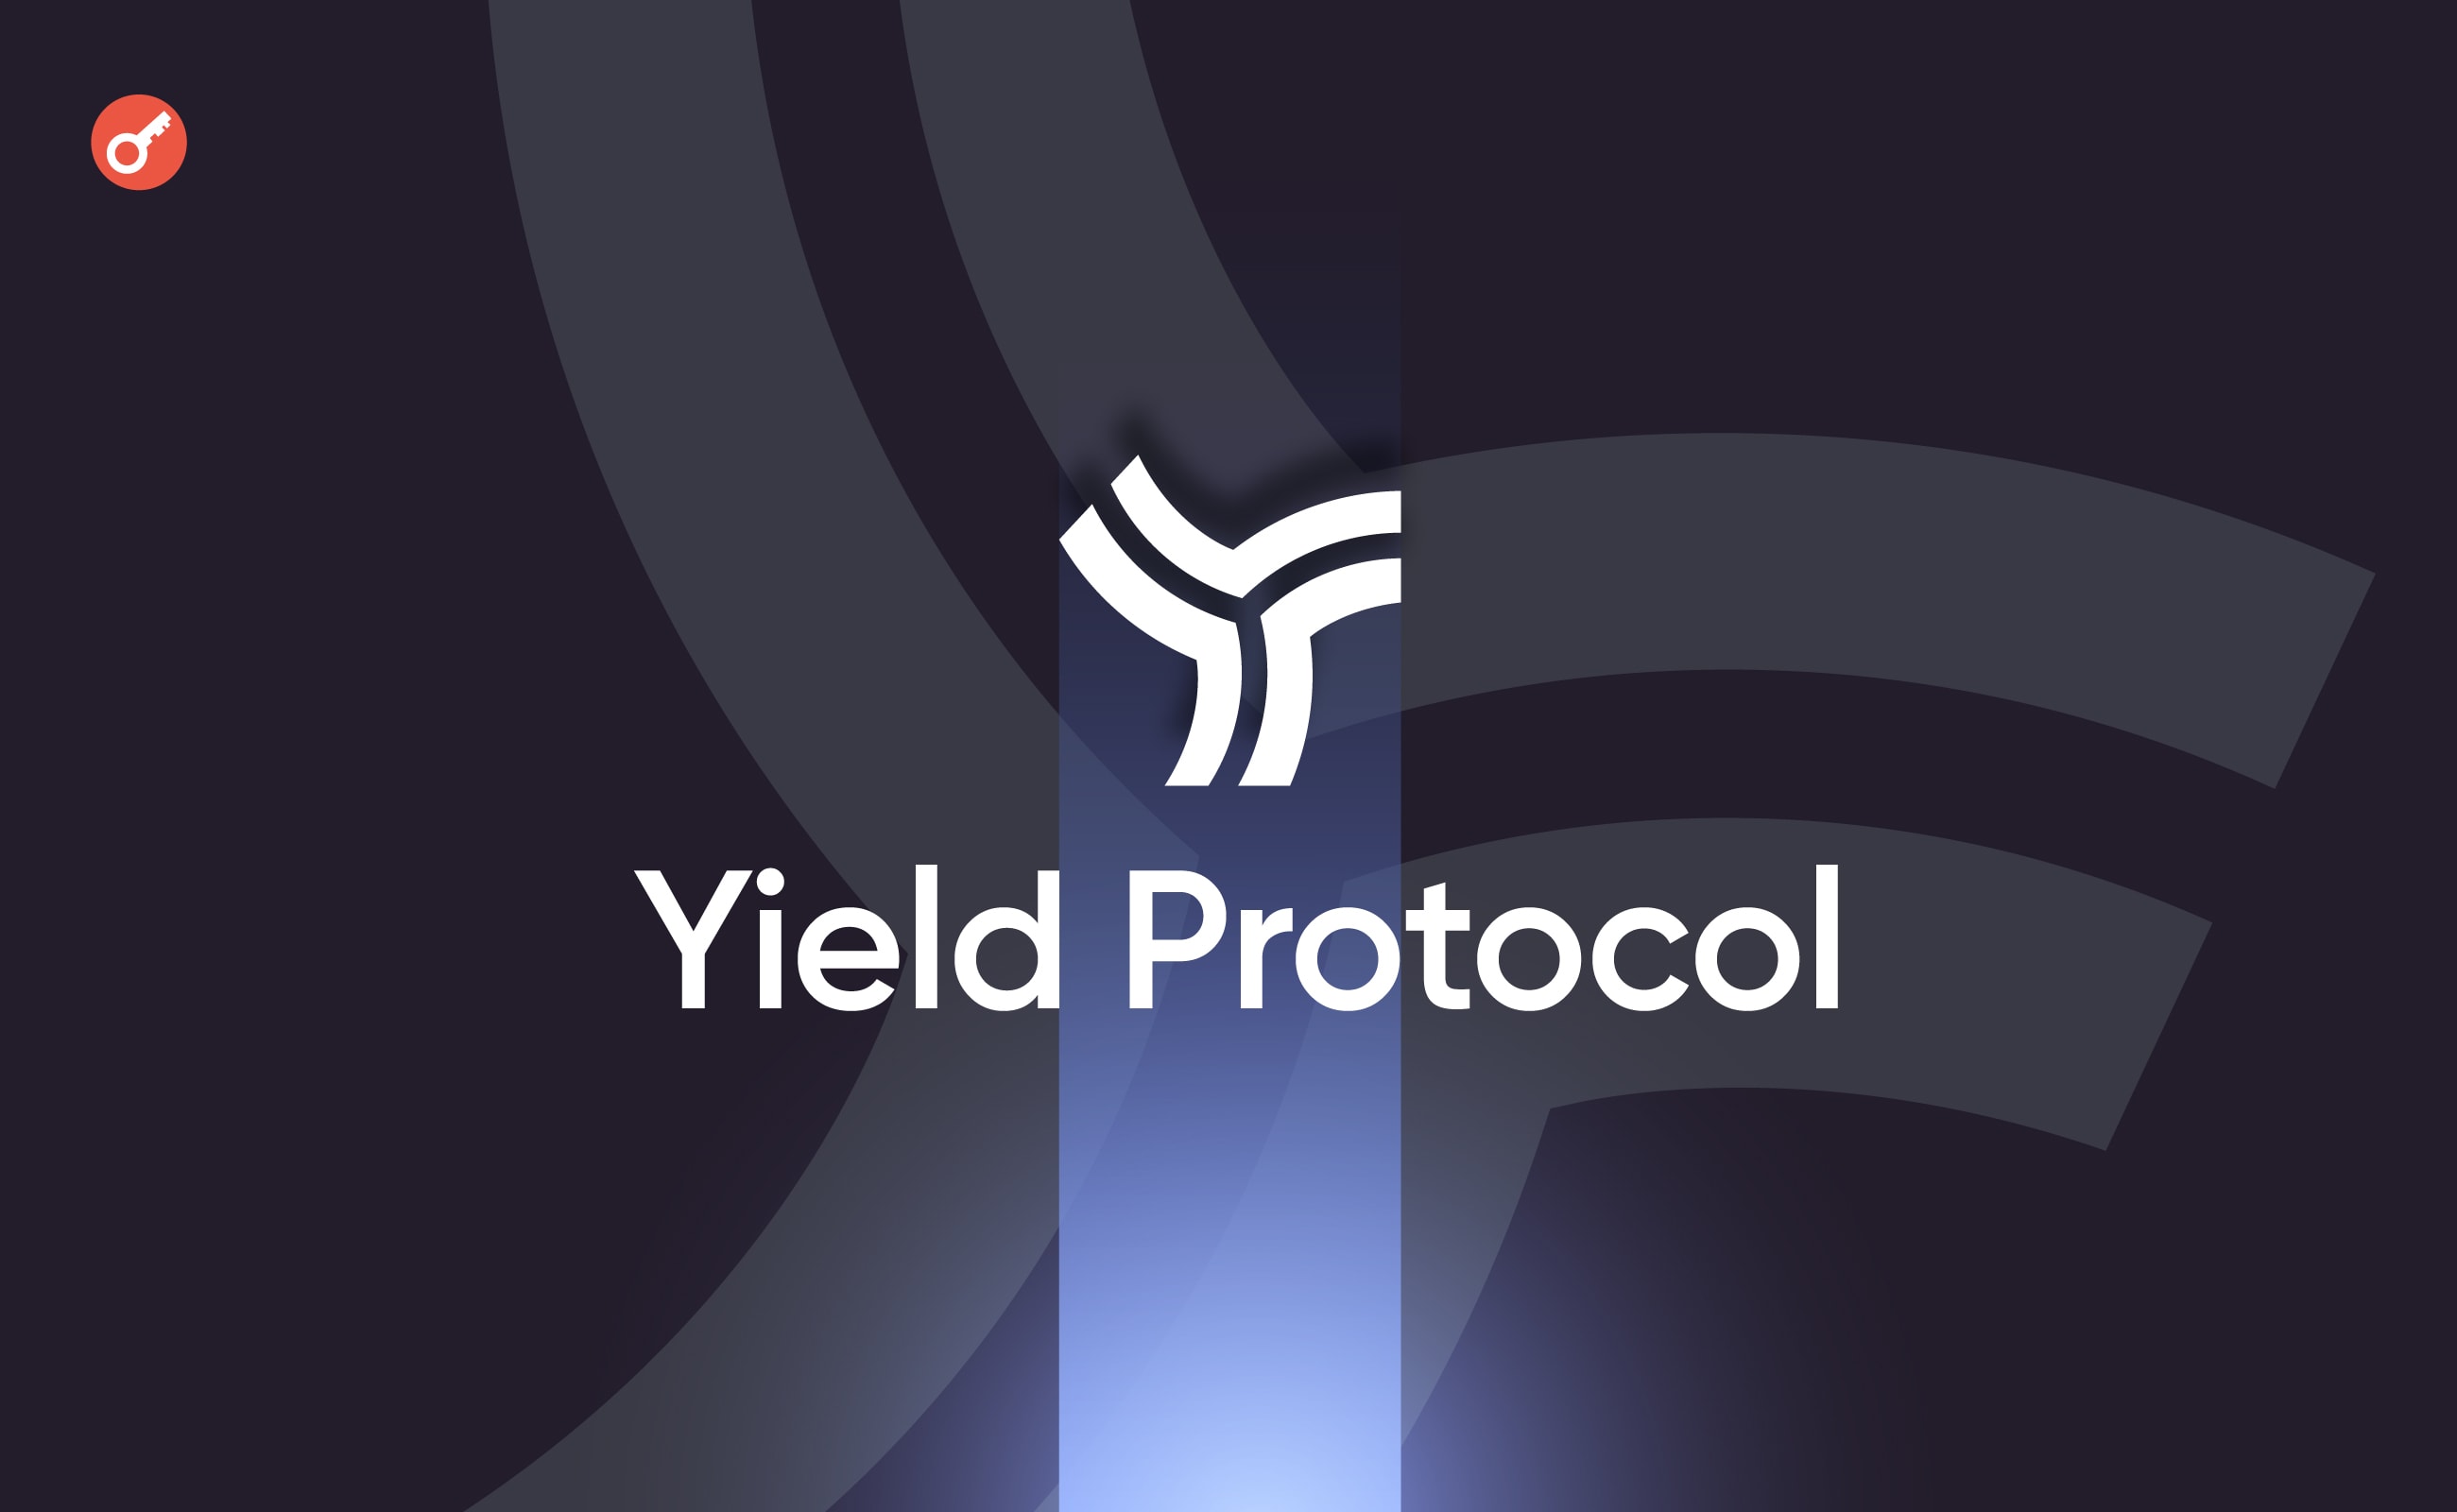 Проєкт Yield Protocol припинить роботу до кінця 2023 року. Головний колаж новини.